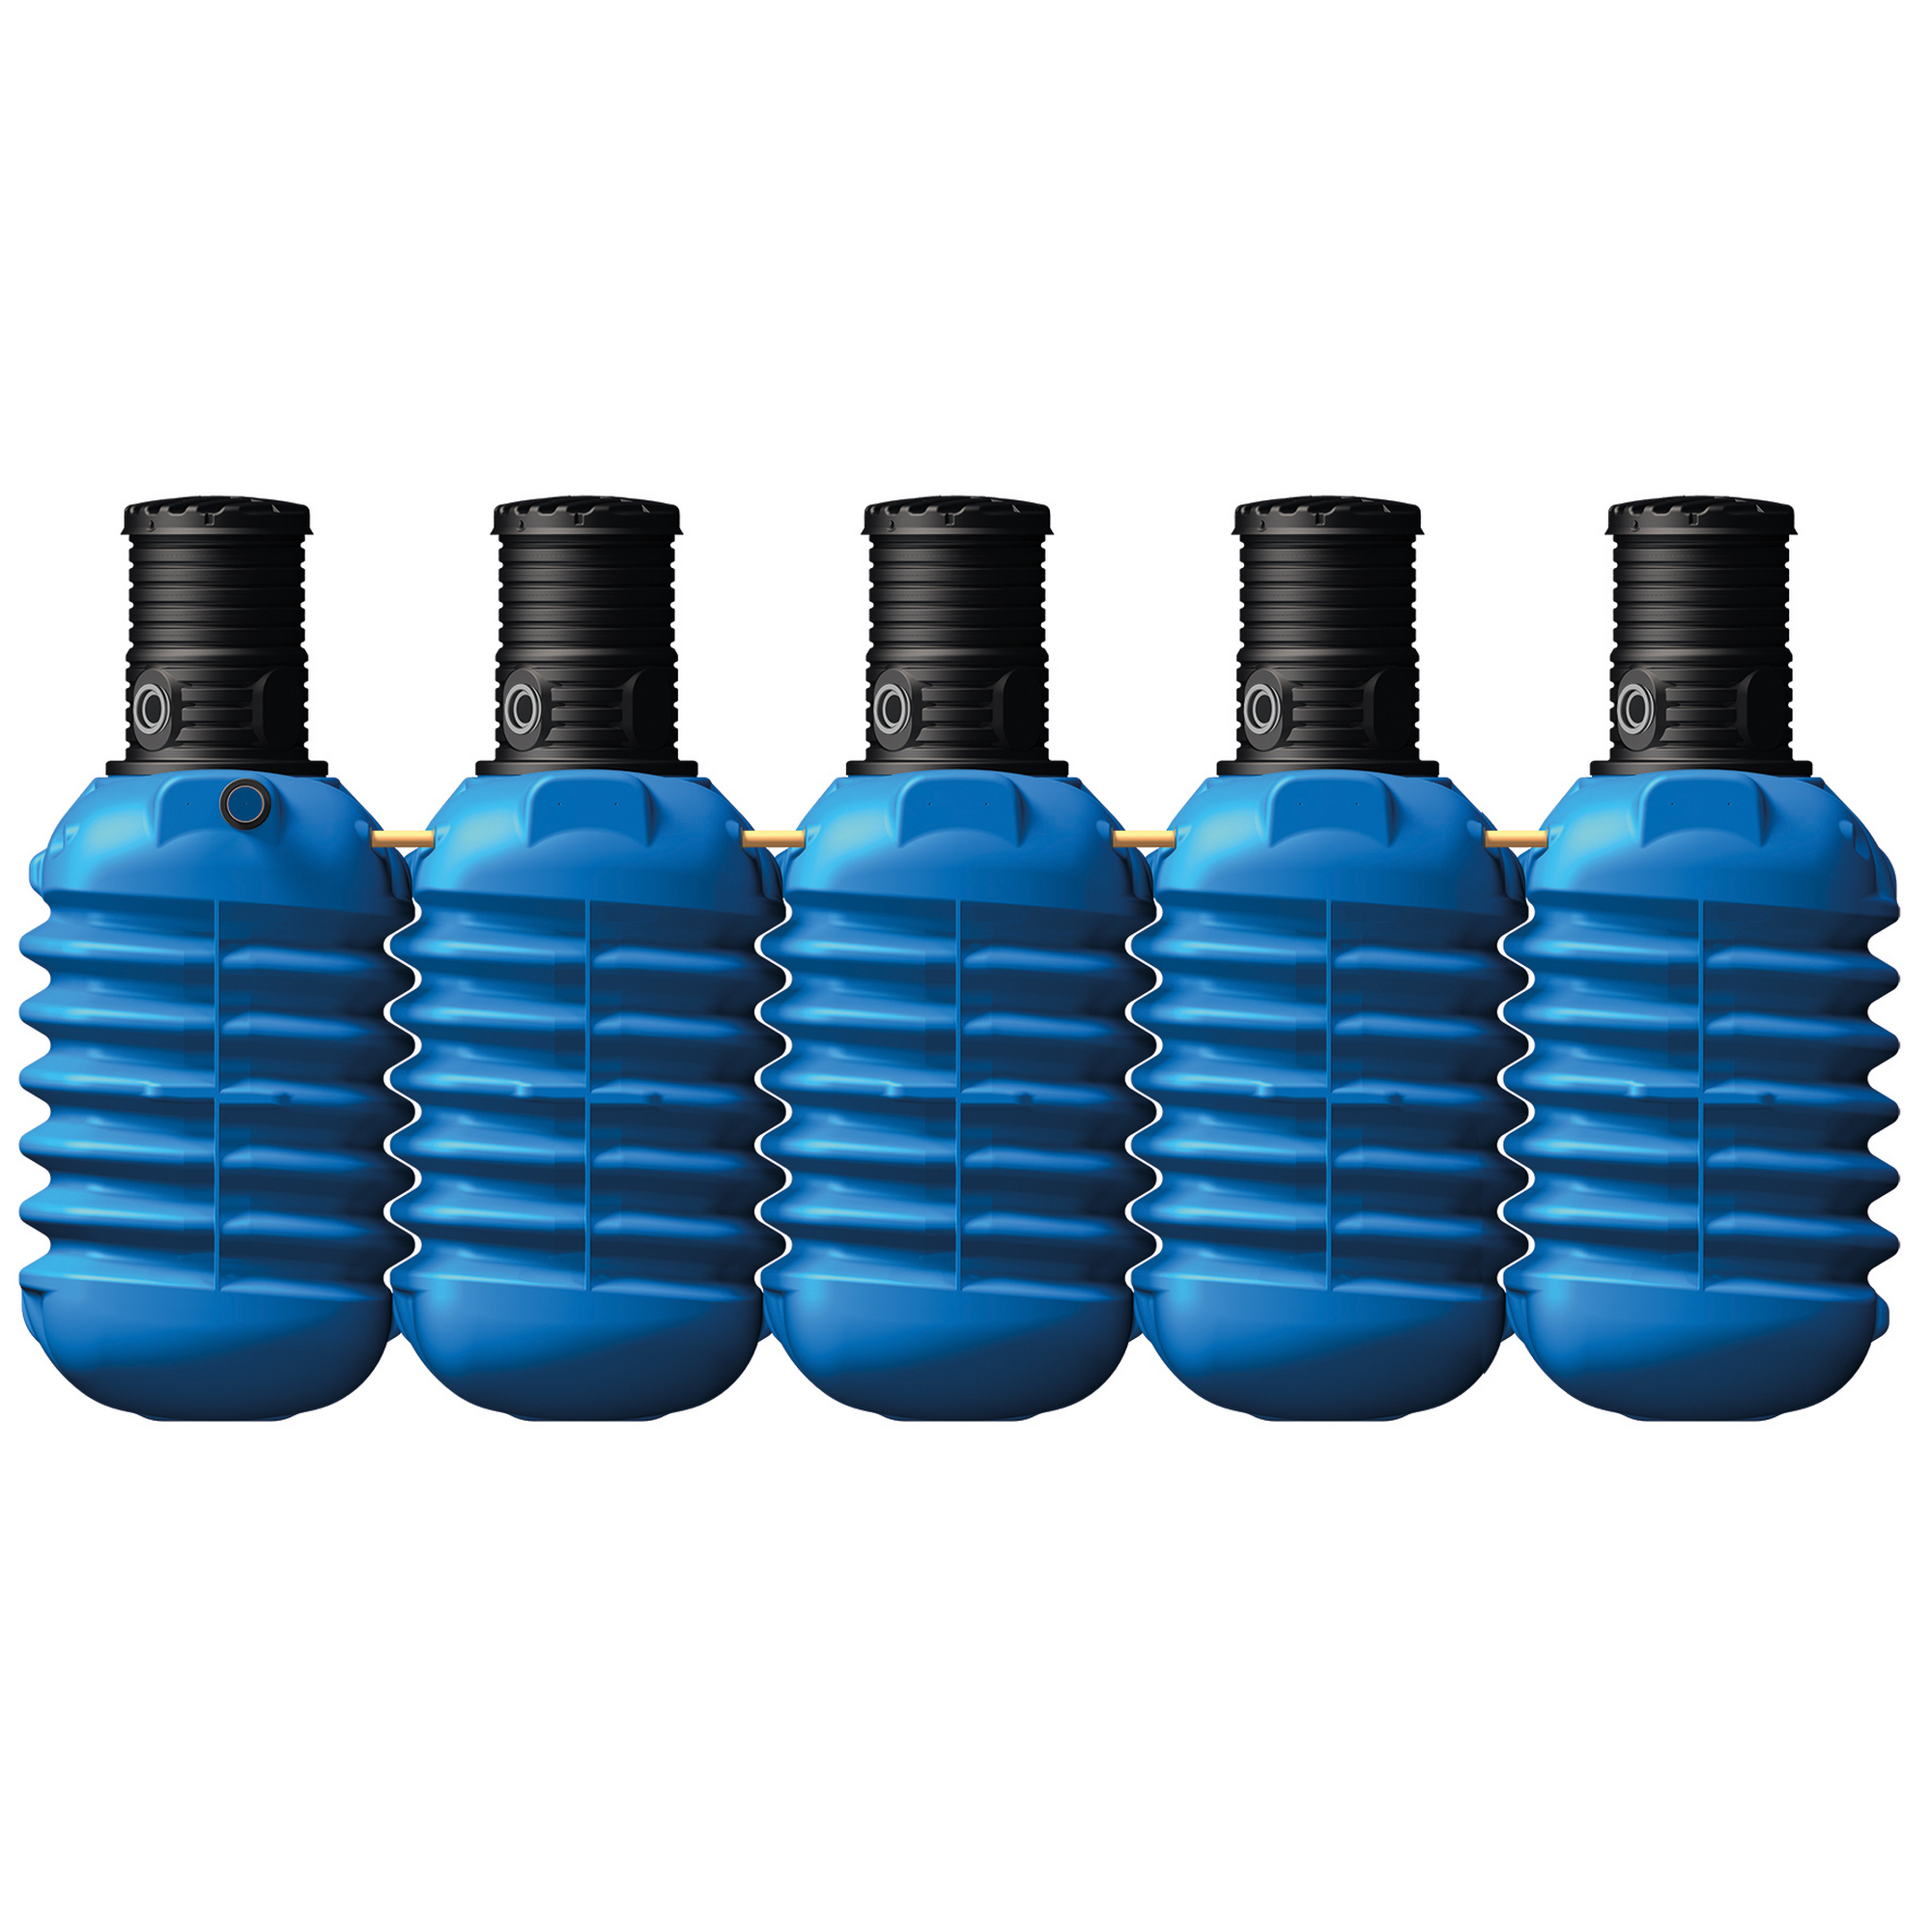 Erdtank-Paket Modularis 'Haus-Premium' blau 12.500 l 576 x 147 x 201 cm + product picture